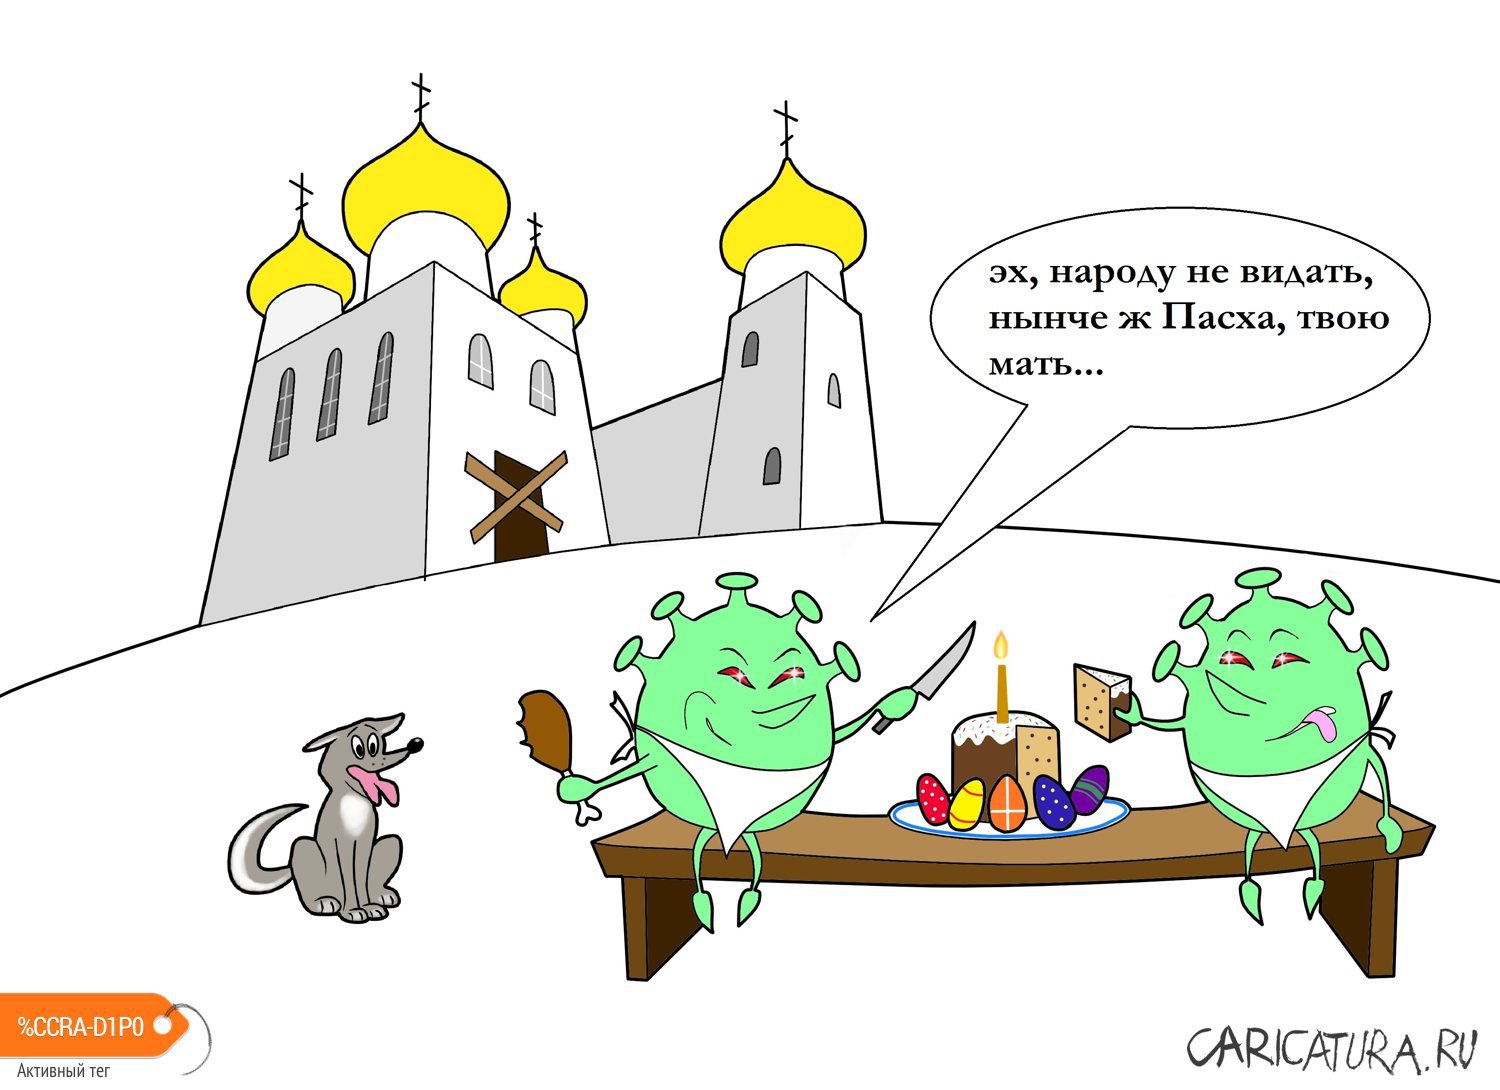 Карикатура "Пасха во времена пандемии коронавируса", Глеб Белевский